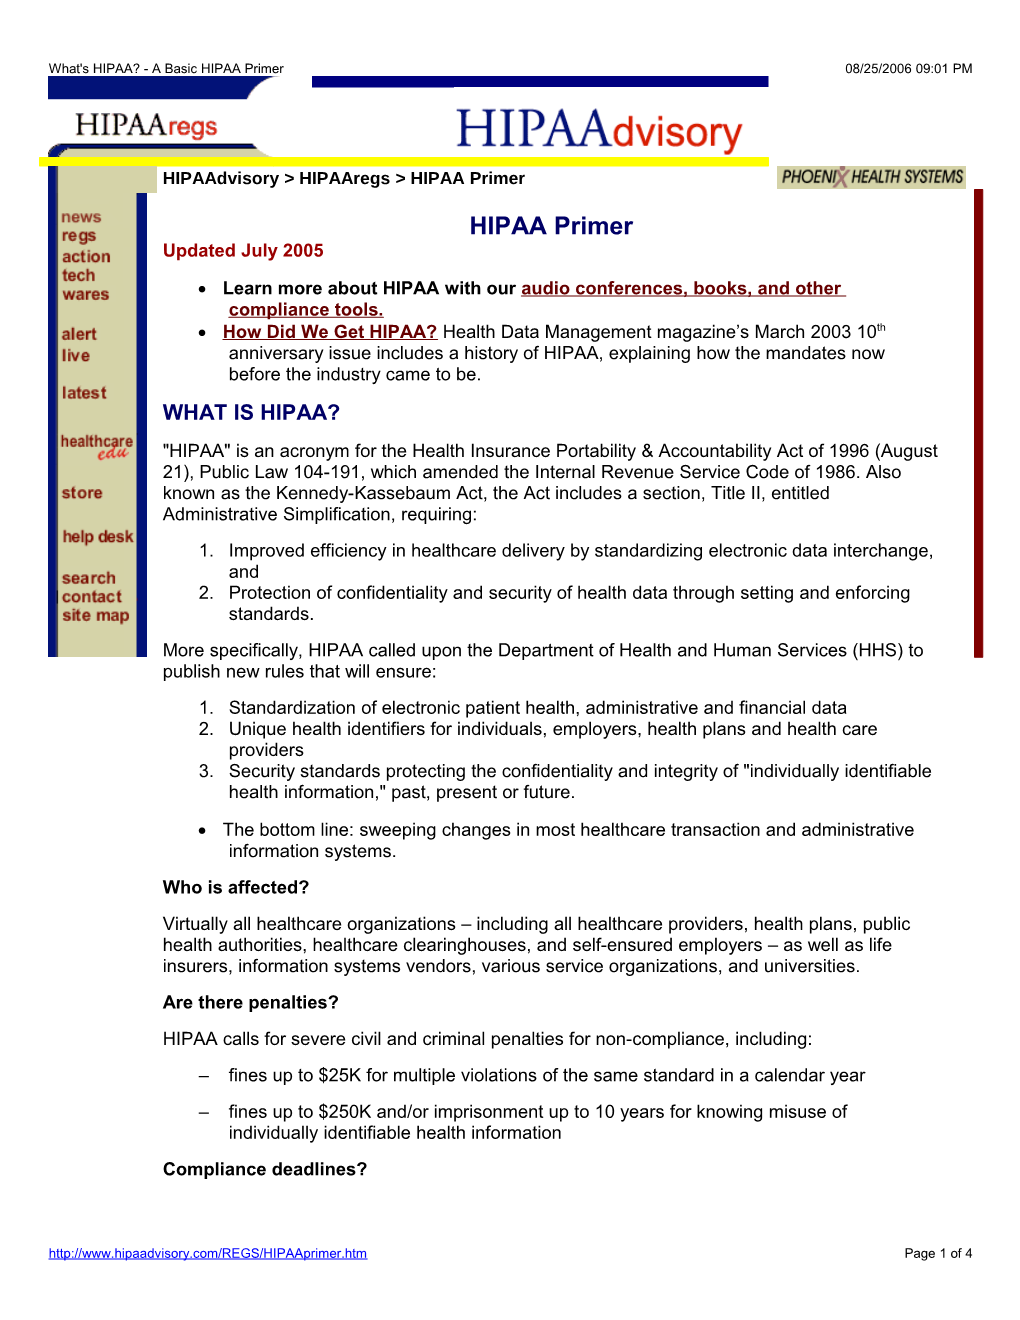 What's HIPAA? - a Basic HIPAA Primer08/25/2006 09:01 PM